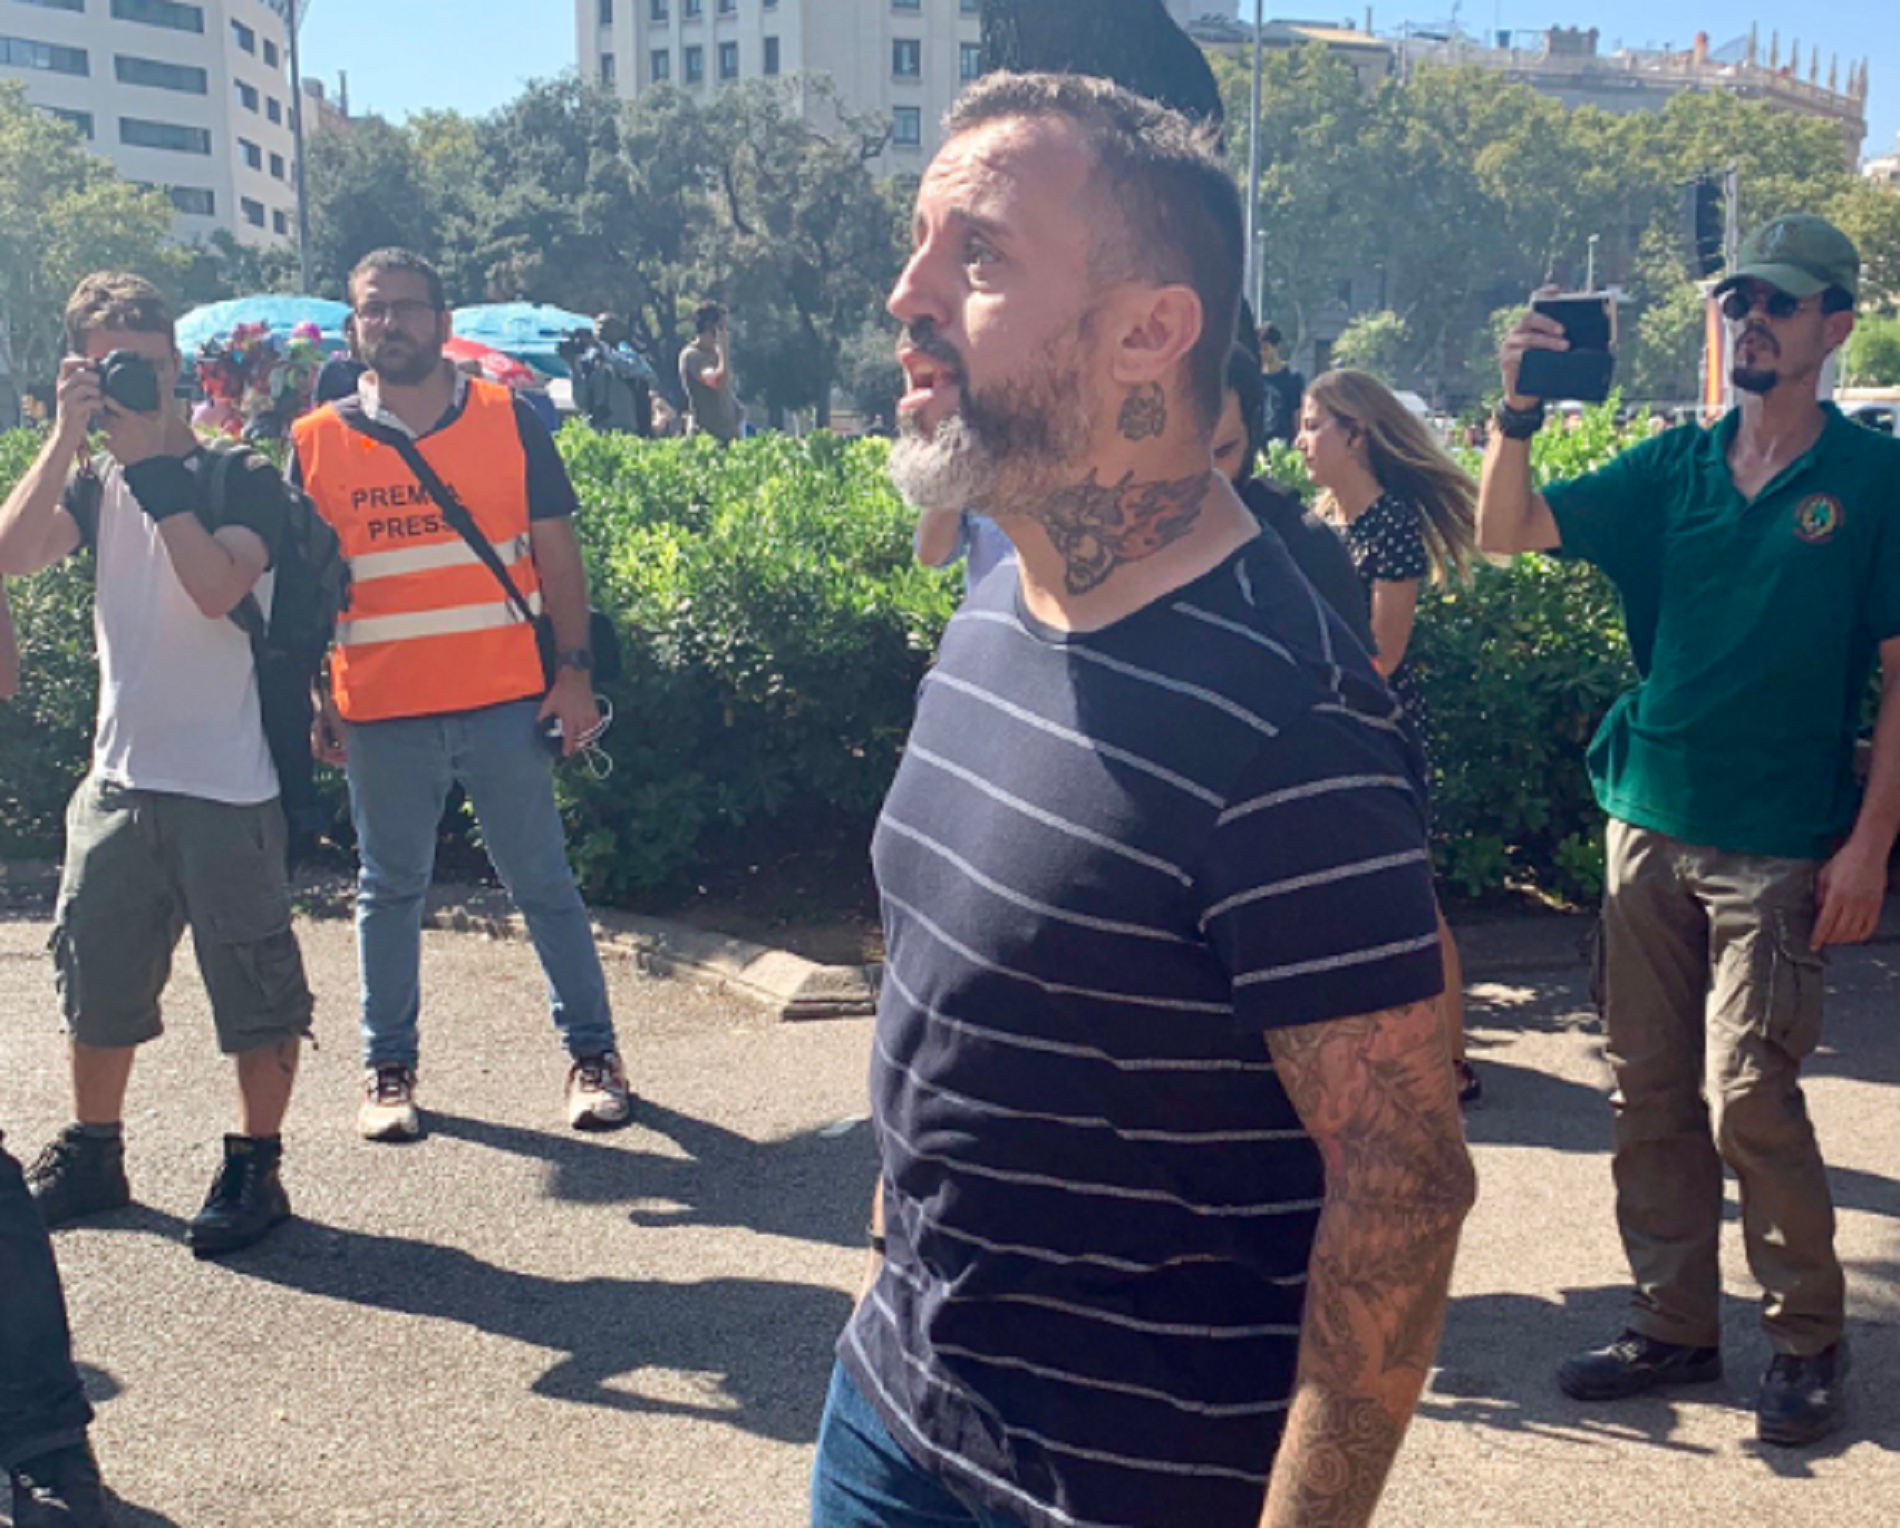 El tatuatge nazi d'un dels assistents a la manifestació policial